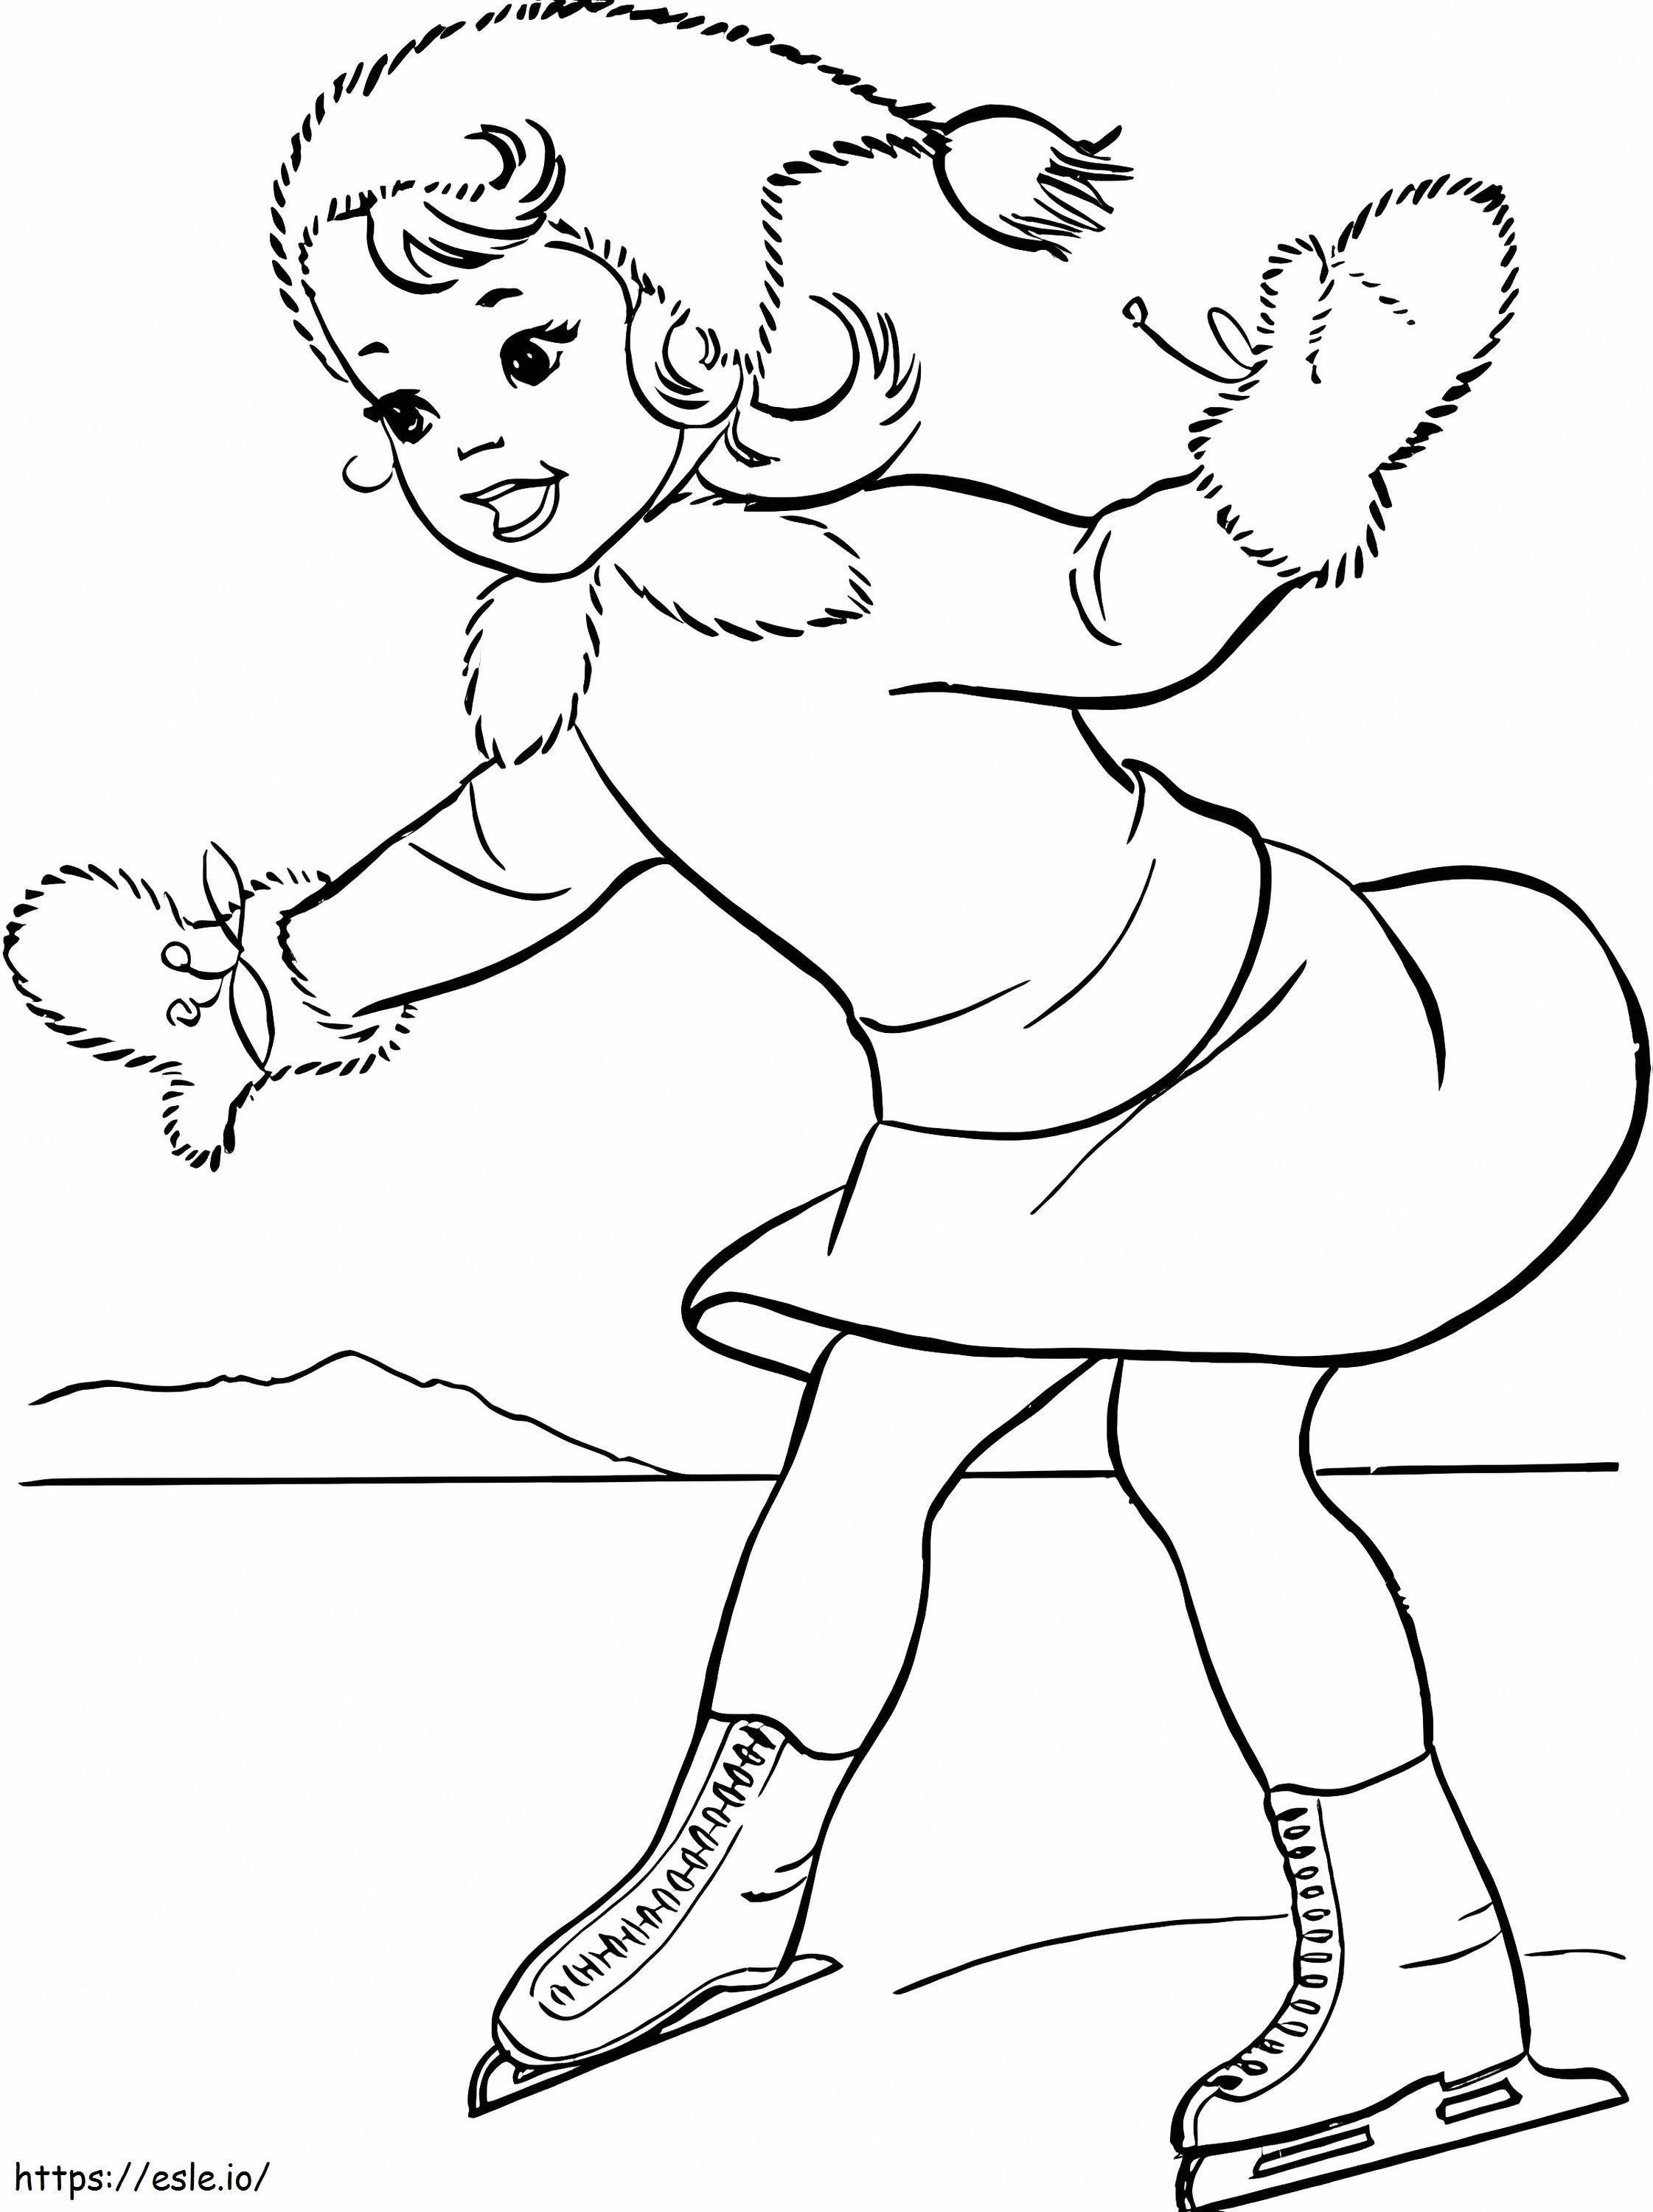 Kleines Mädchen, das Eislaufen spielt ausmalbilder